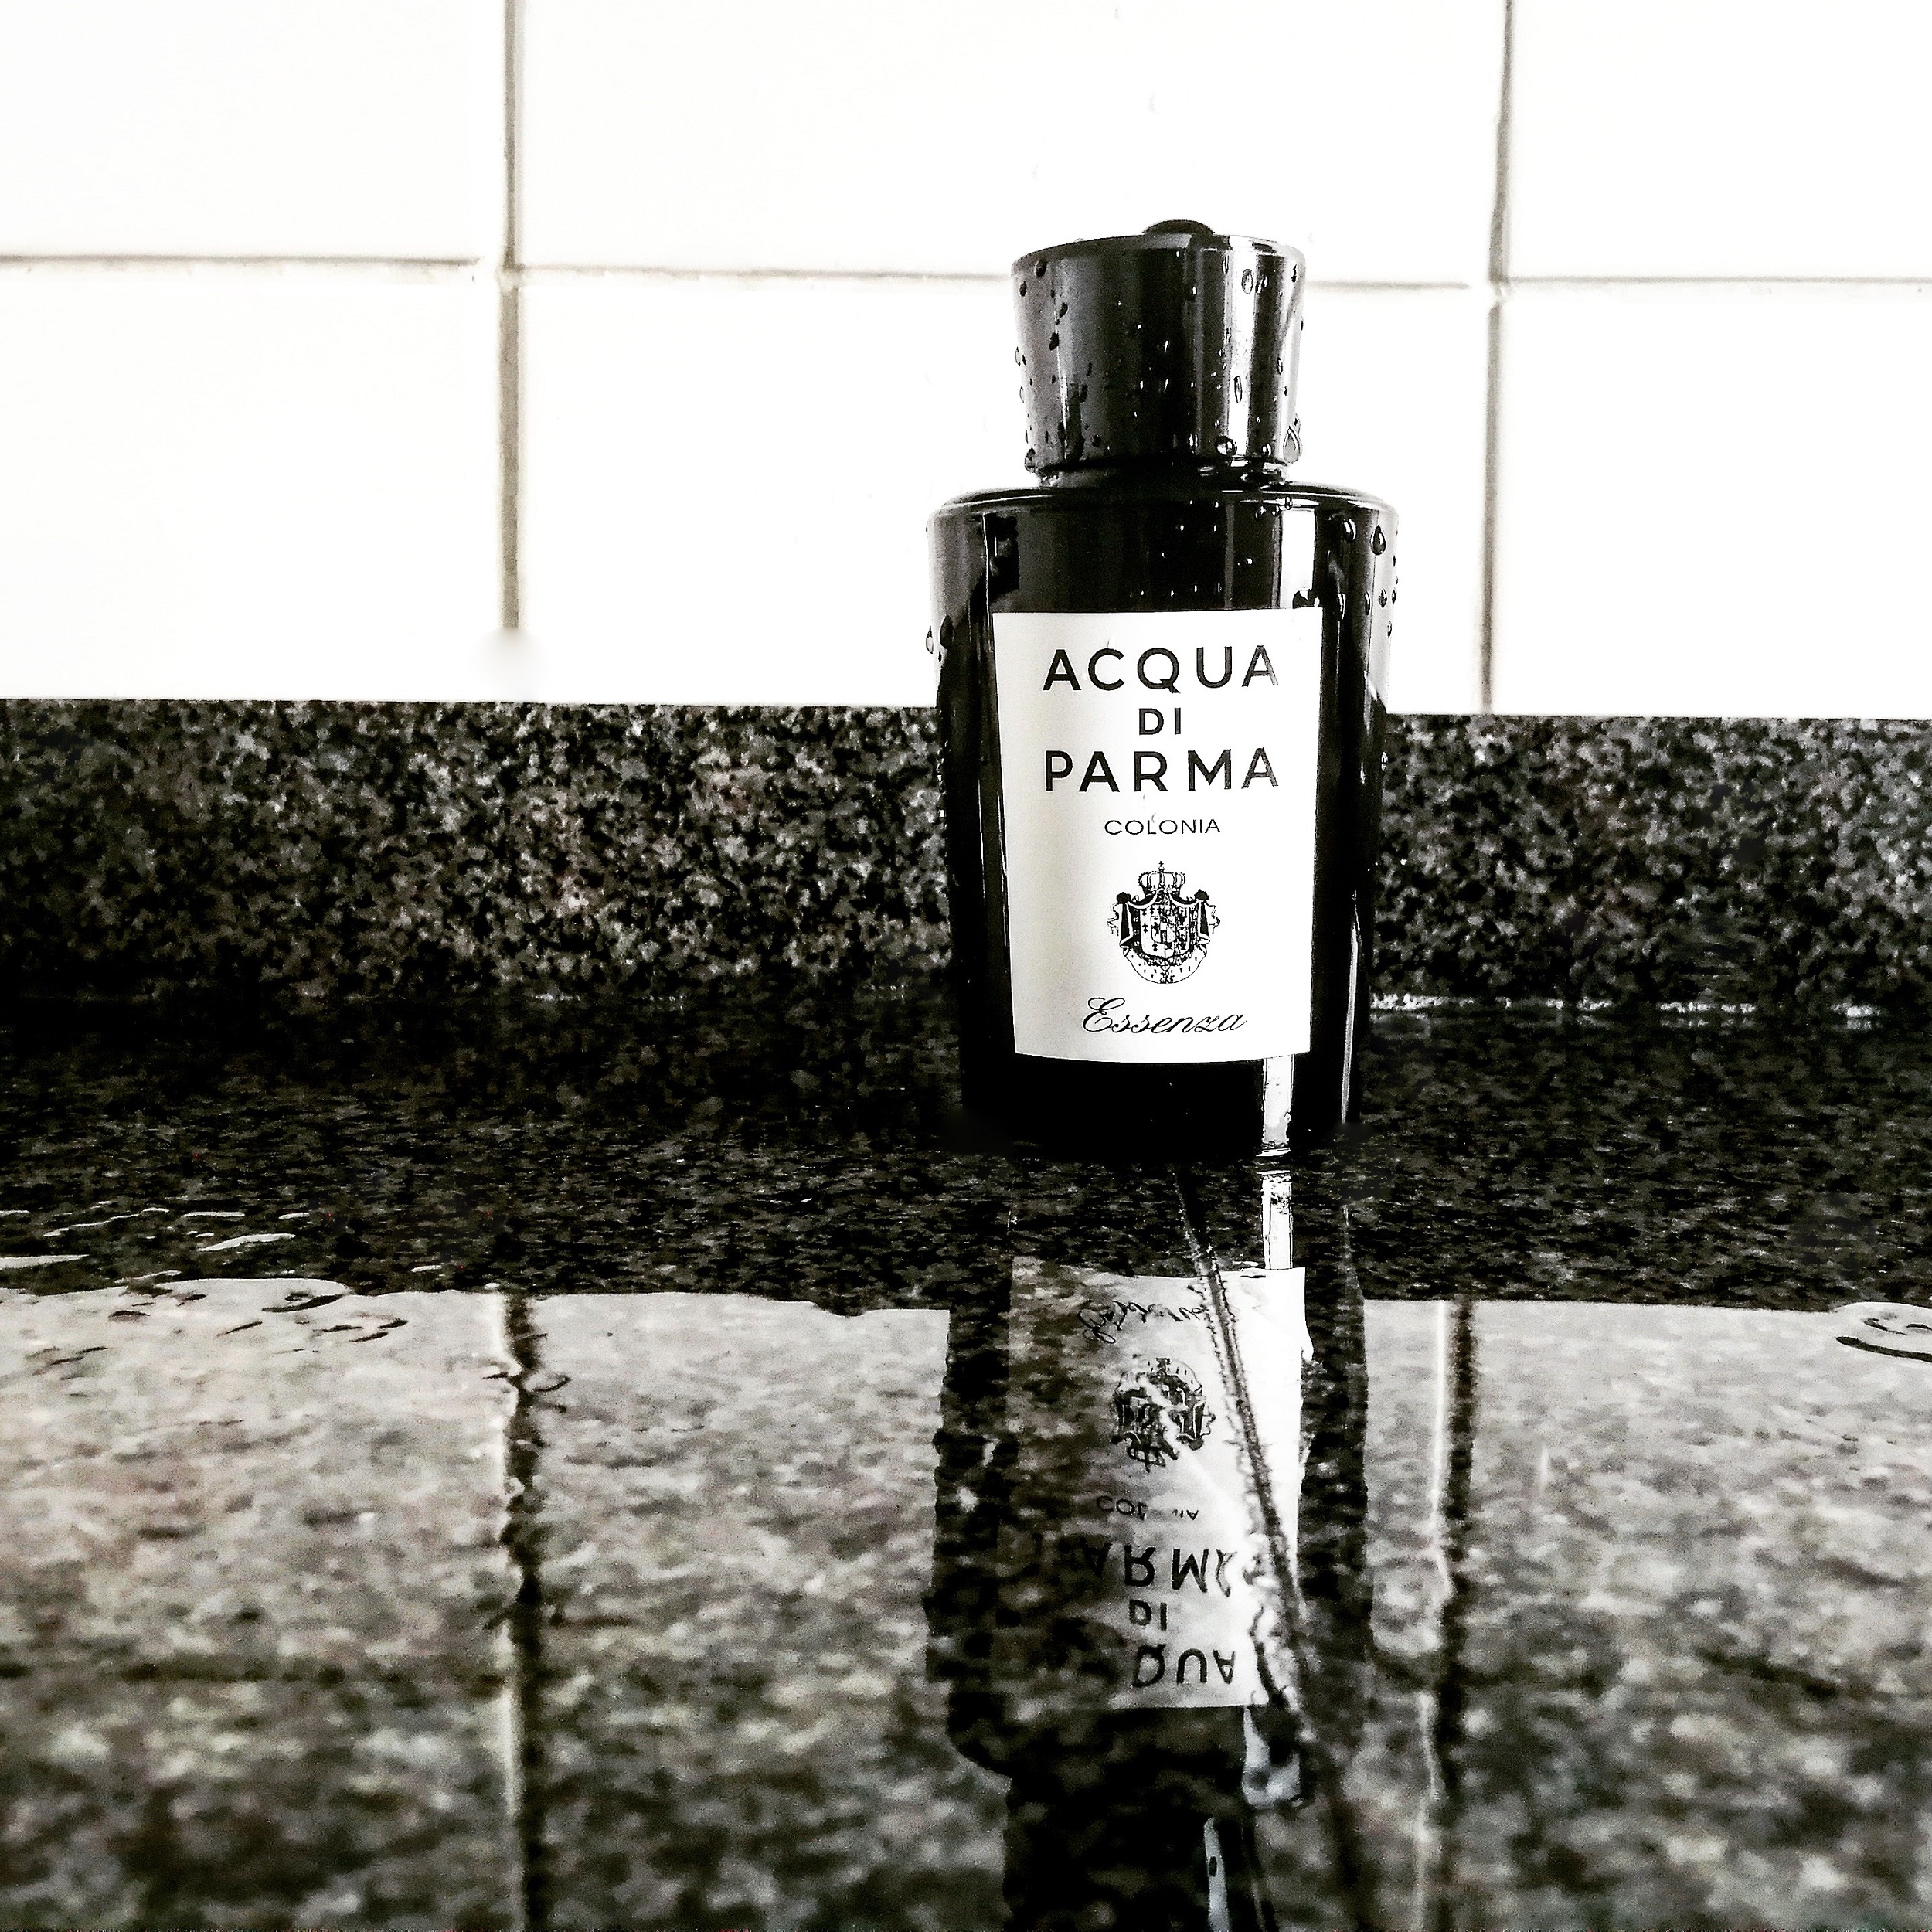 Acqua Di Parma Debuts Oud & Spice Eau de Parfum